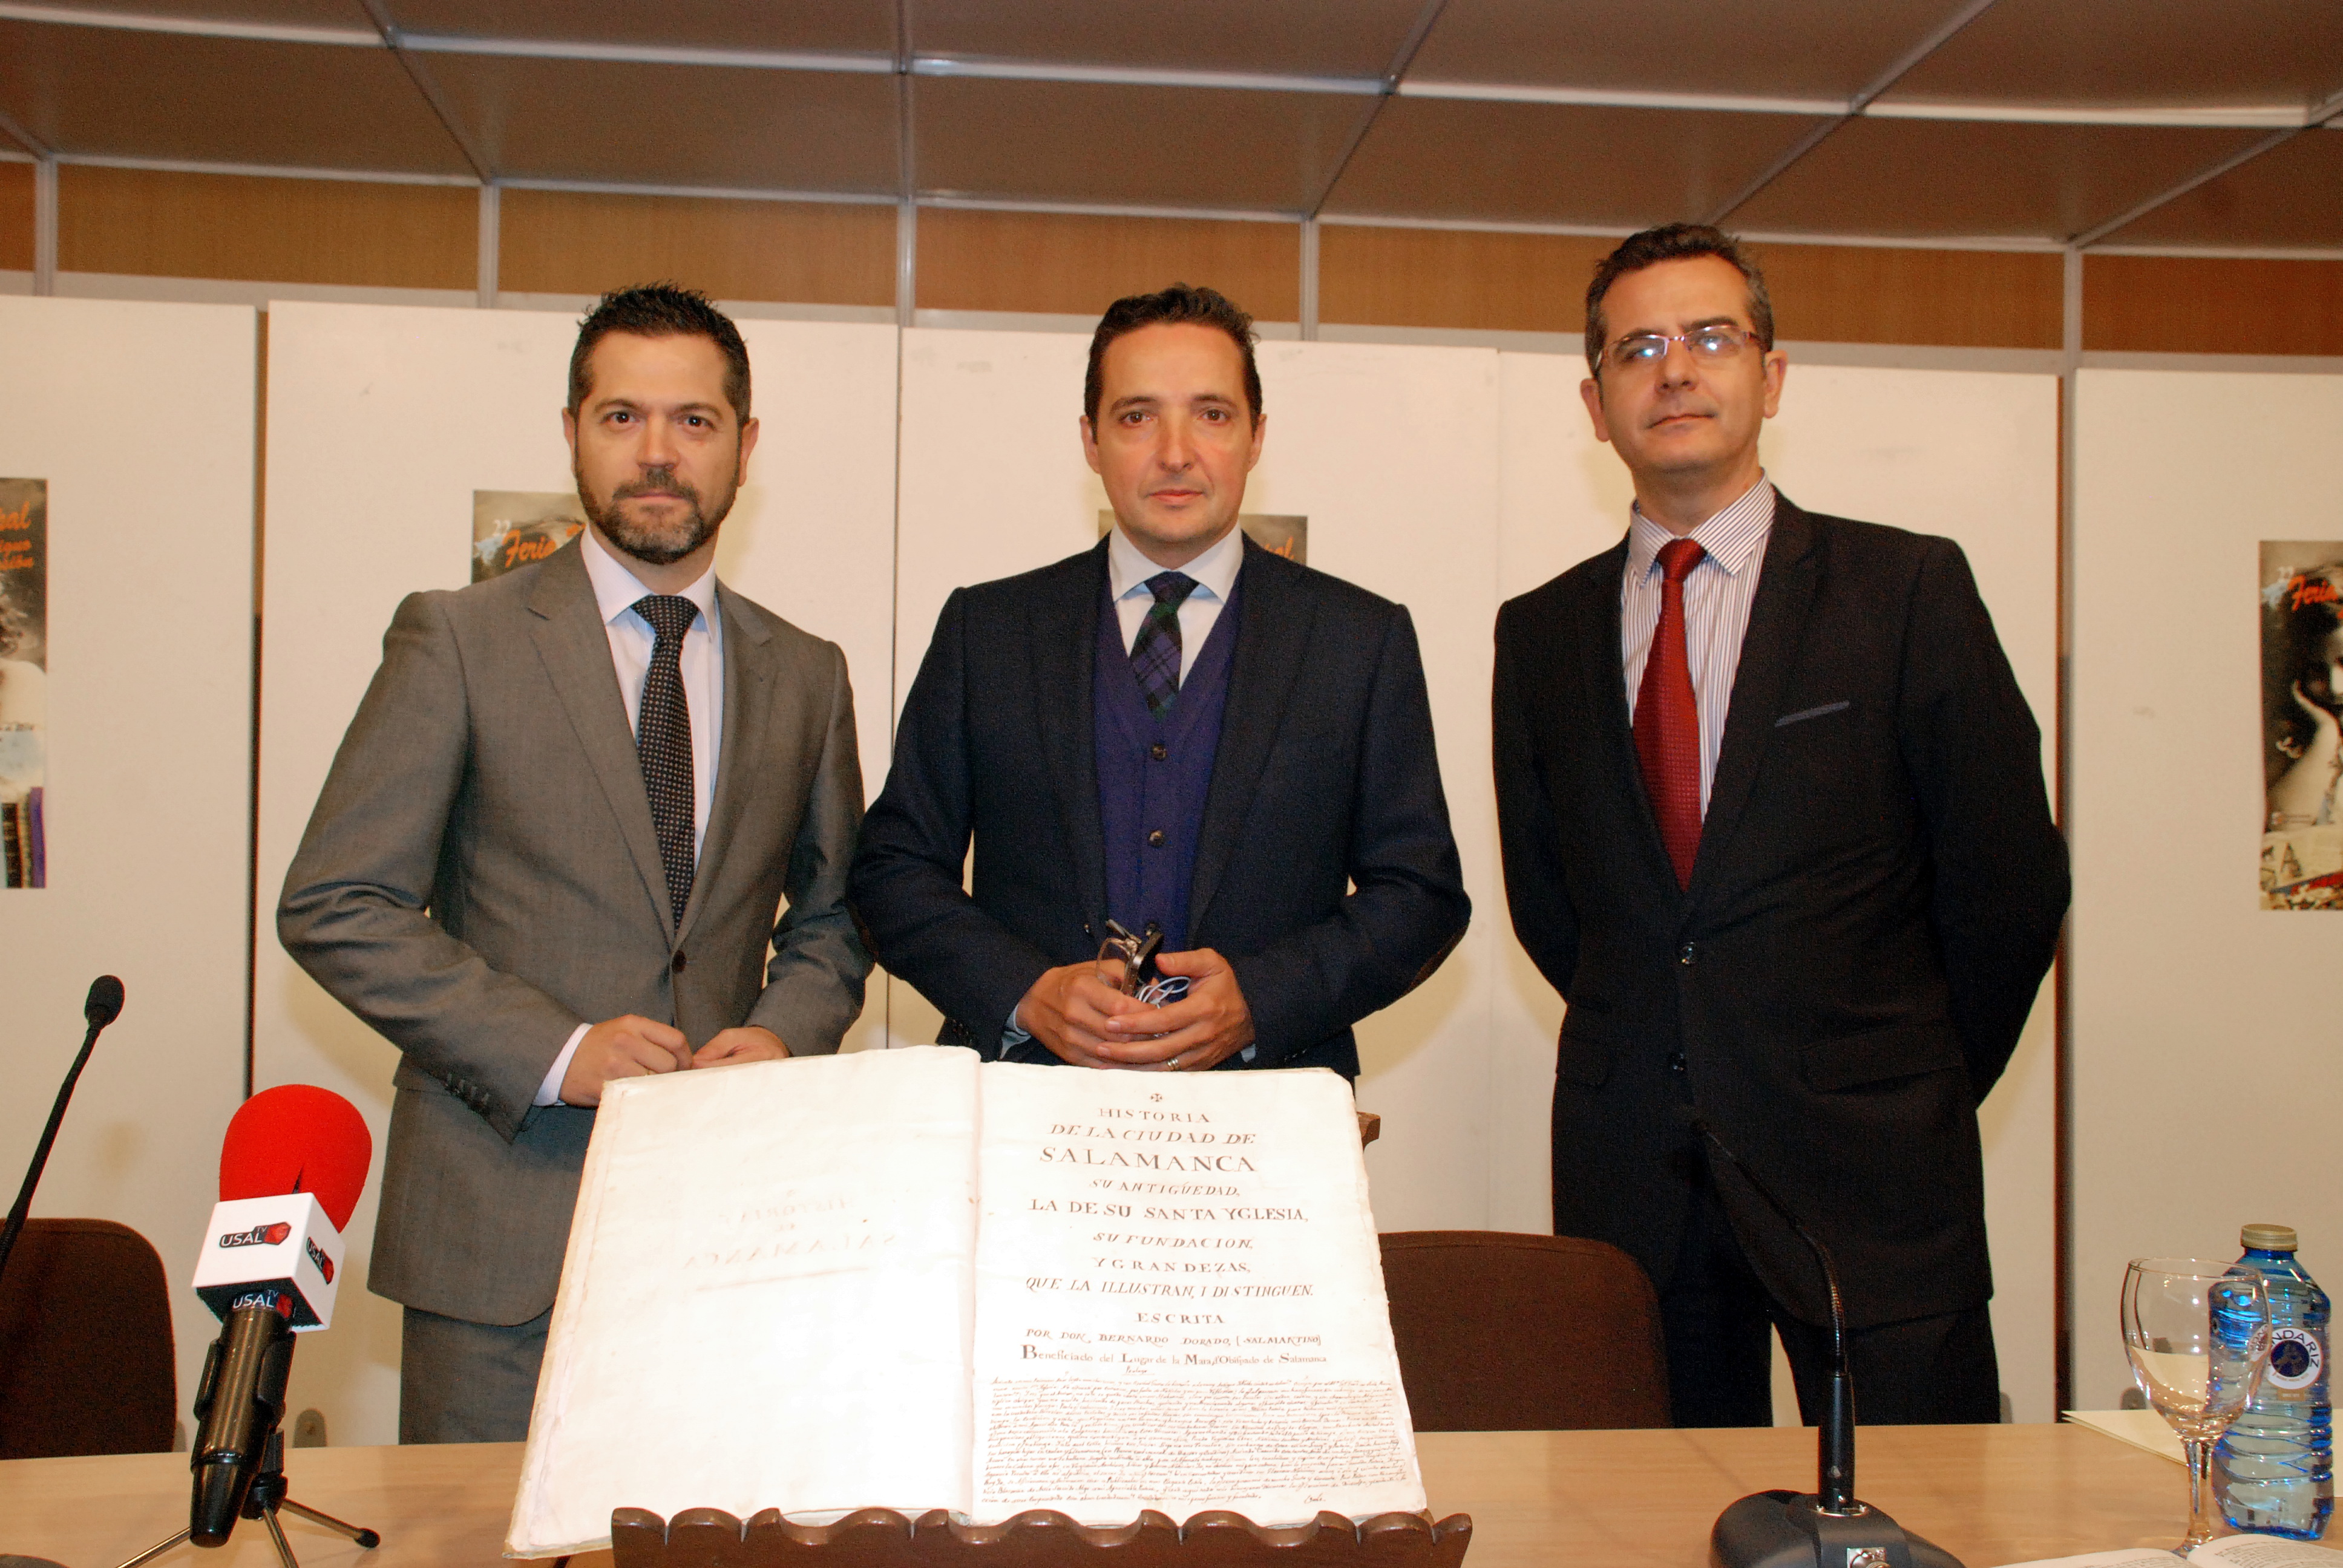 Presentado el manuscrito de Bernardo Dorado que ha sido adquirido recientemente por el Ayuntamiento de Salamanca, la Diputación Provincial y la Universidad de Salamanca